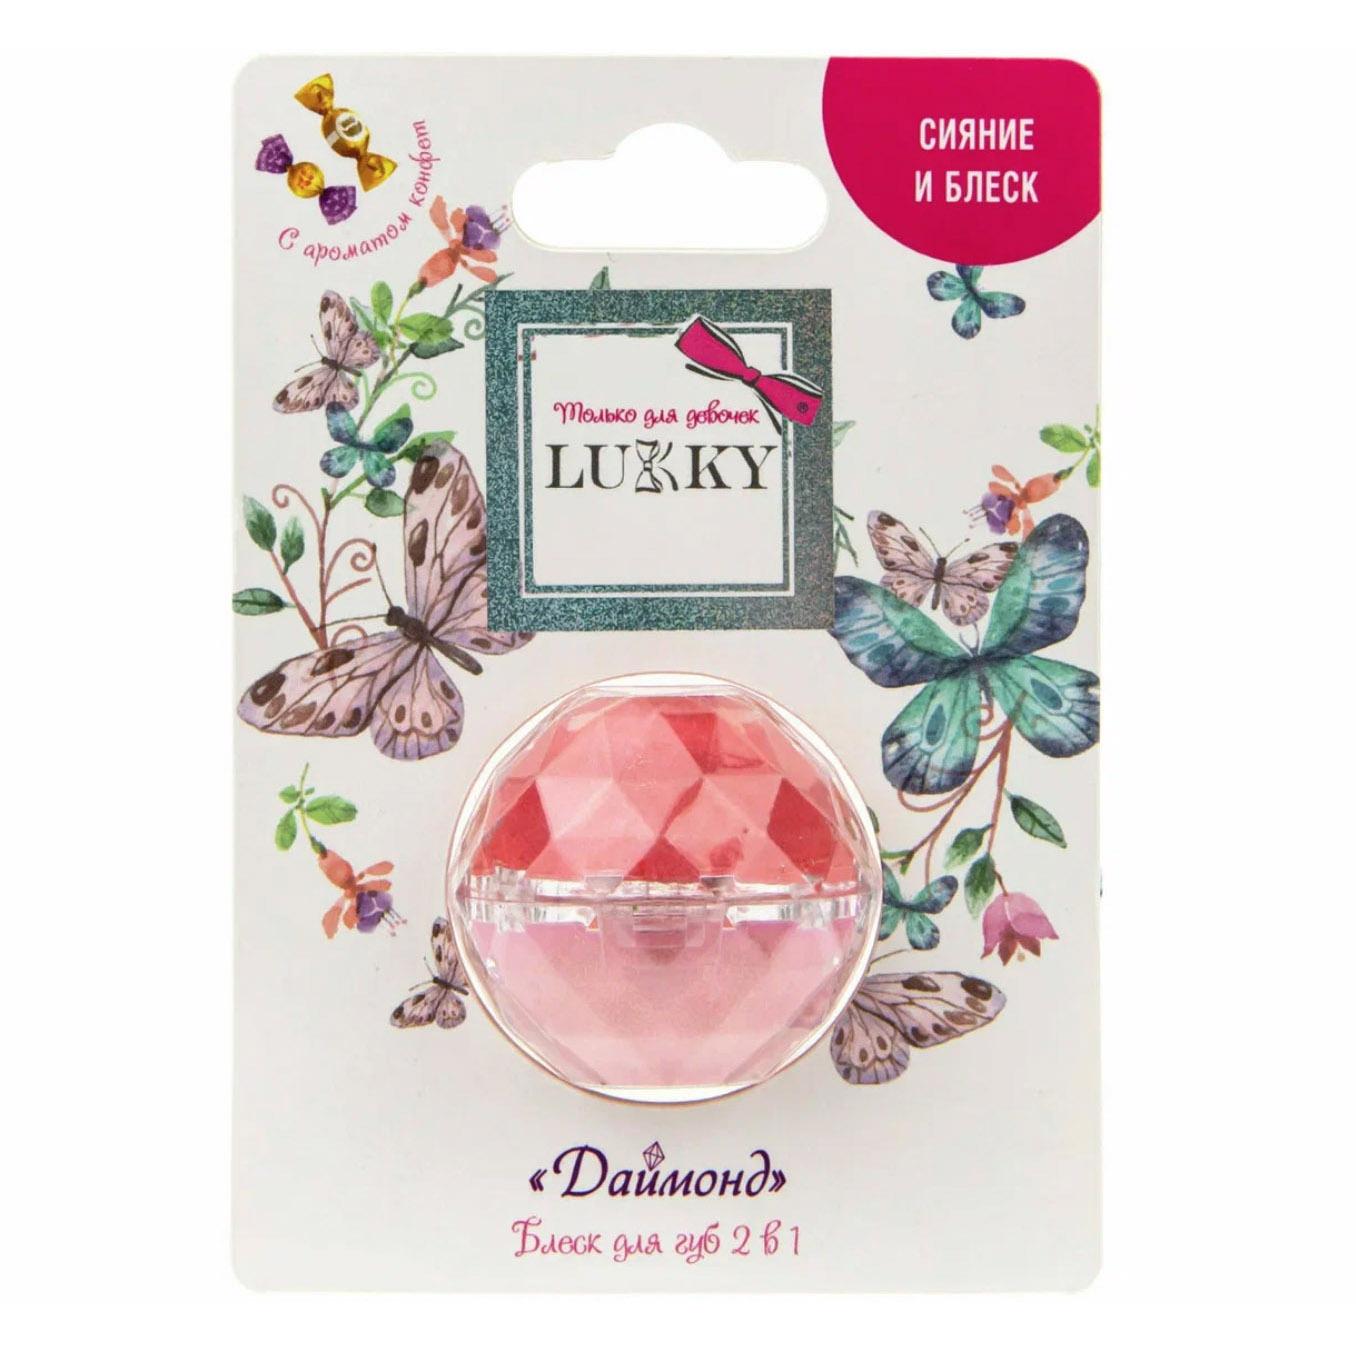 Блеск для губ Lukky Даймонд 2в1 аромат конфет розовый/бледно-розовый, 10 гр, Т20264 коробка для конфет 4 шт розовый 12 5 х 12 5 х 3 5 см